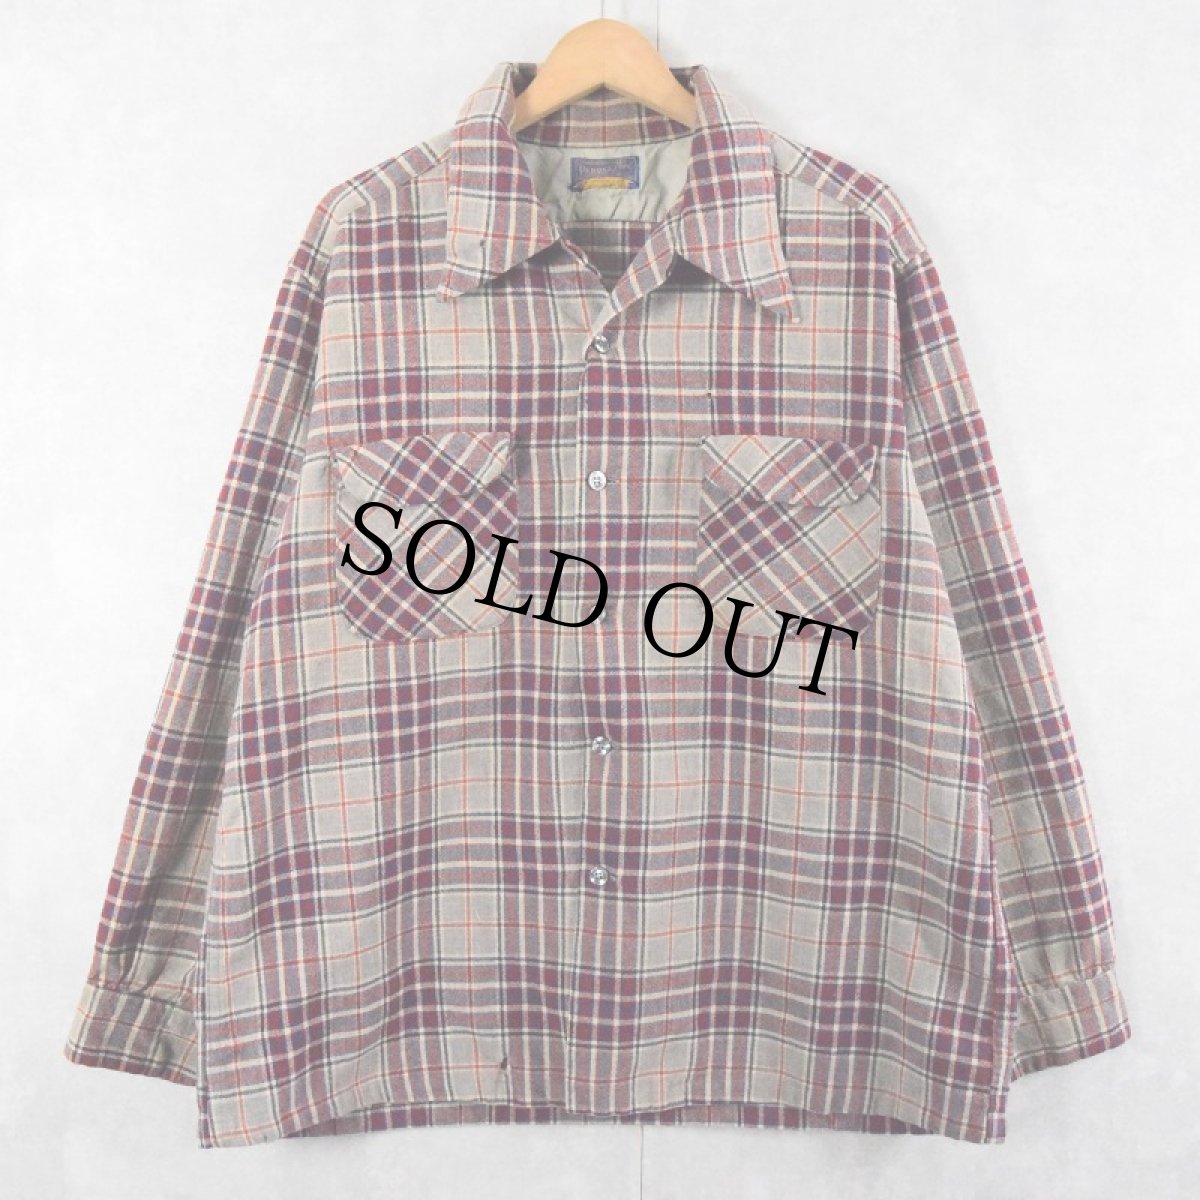 画像1: 70's Pendleton USA製 チェック柄 オープンカラーウールシャツ XL (1)